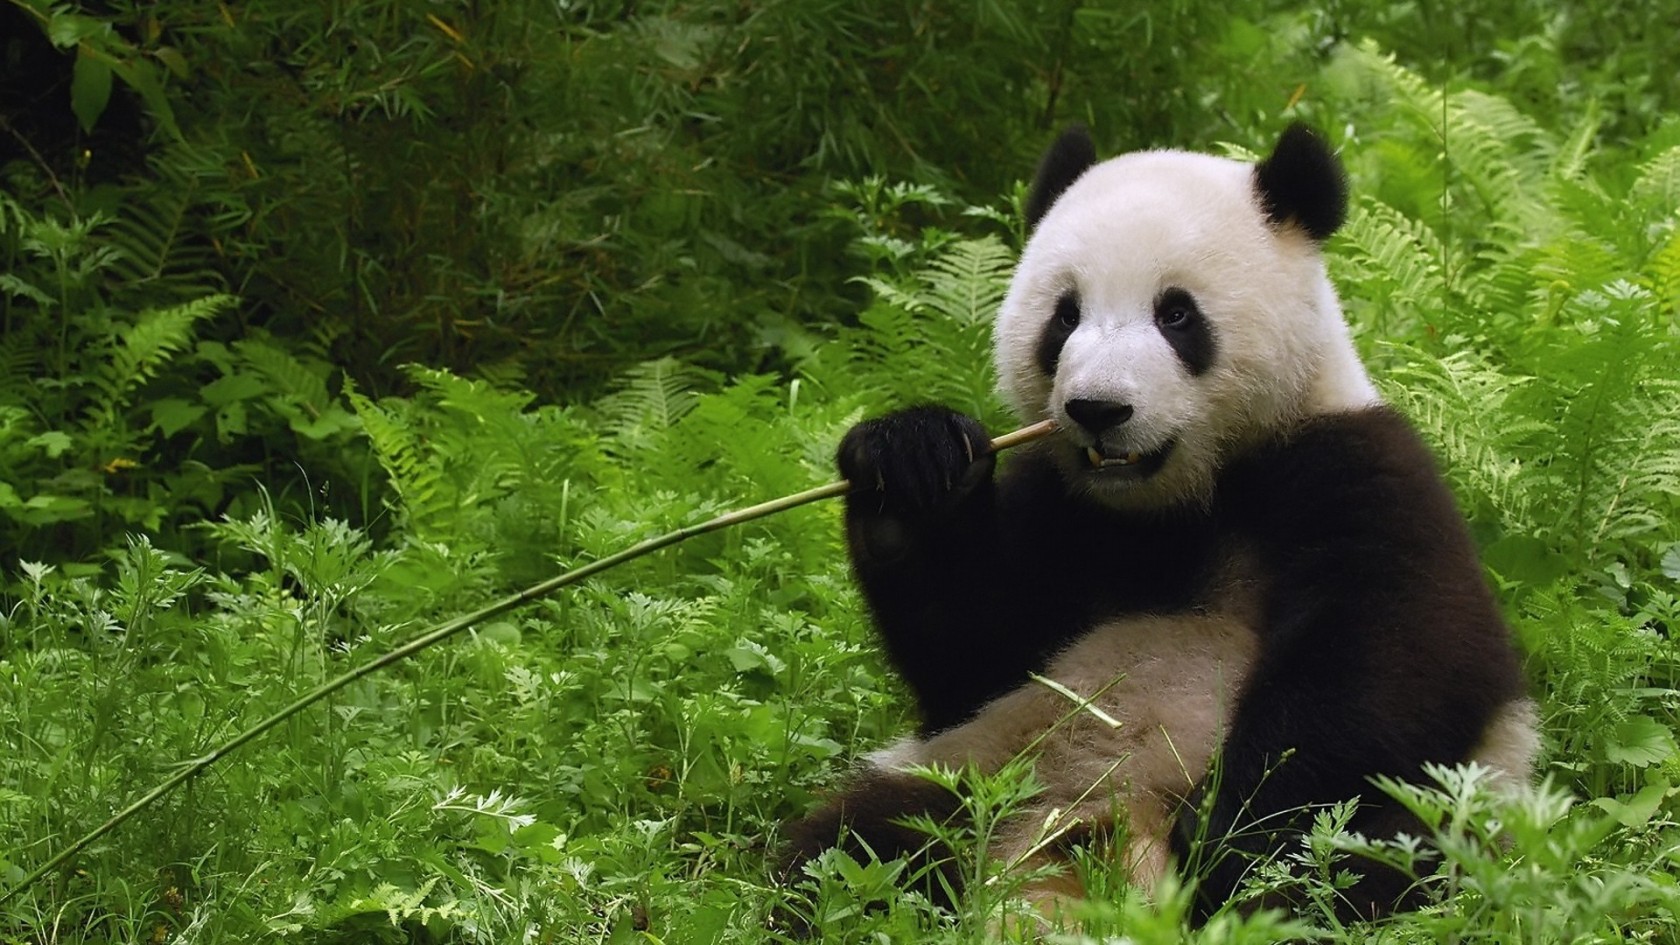 Cute Baby Panda Waving - wallpaper